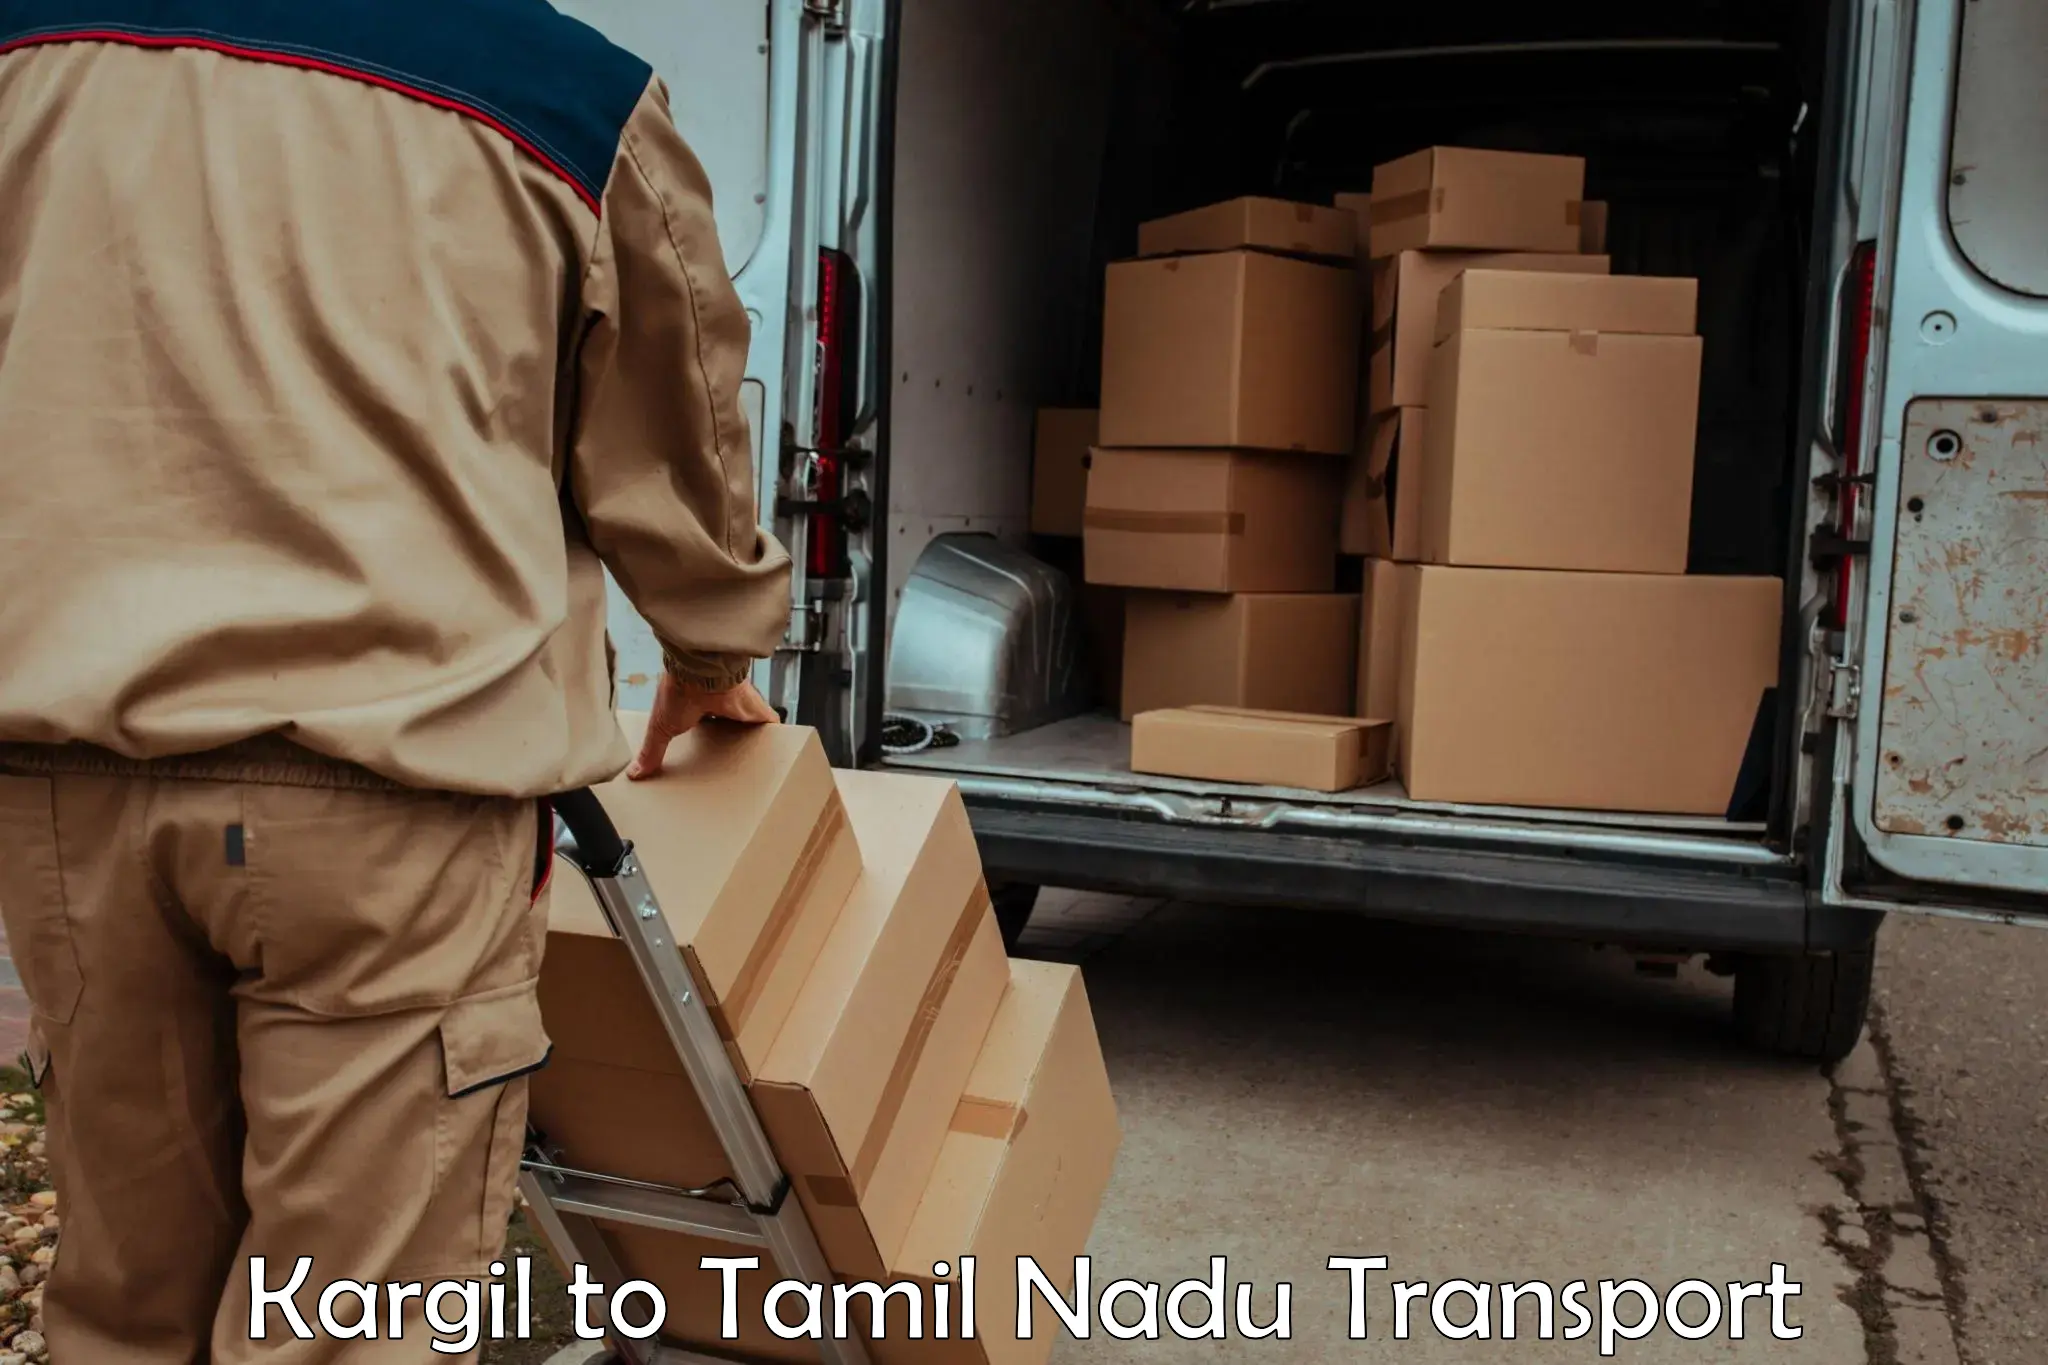 Online transport booking Kargil to Sivakasi